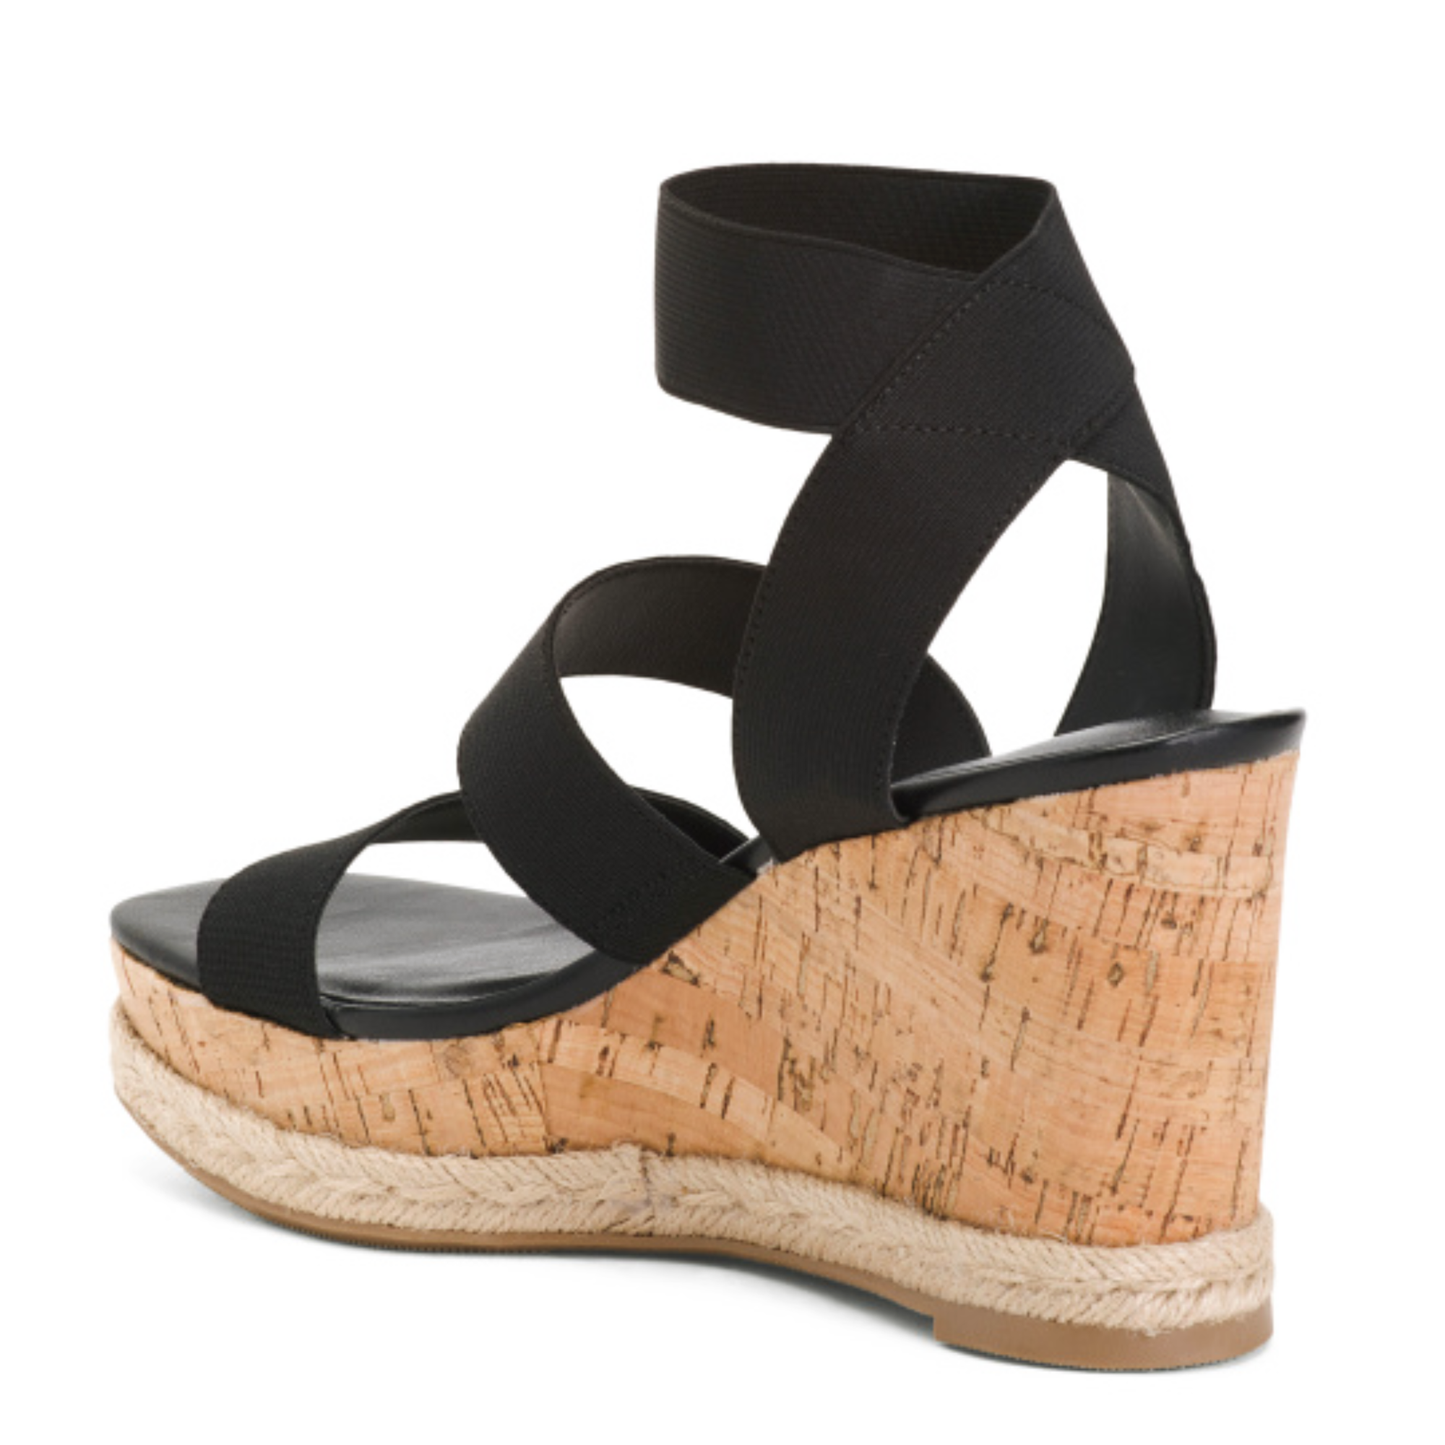 Madden Girl Women's Strappy Cork Wedge Platform Heel Sandals